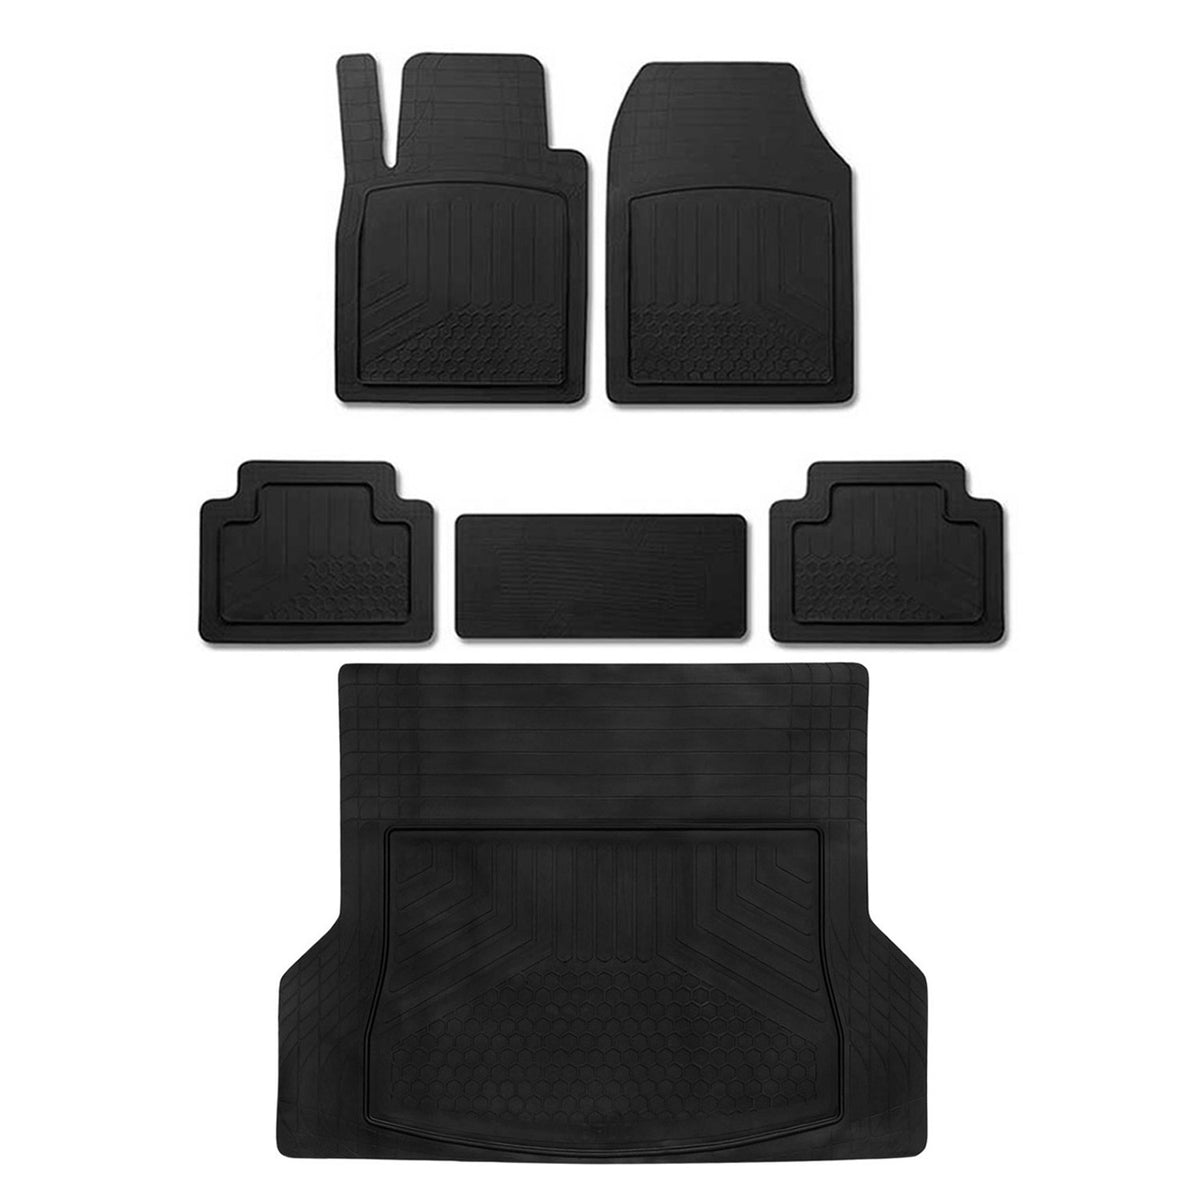 Fußmatten & Kofferraumwanne Set für Dacia Duster Antirutsch Gummi Schwarz